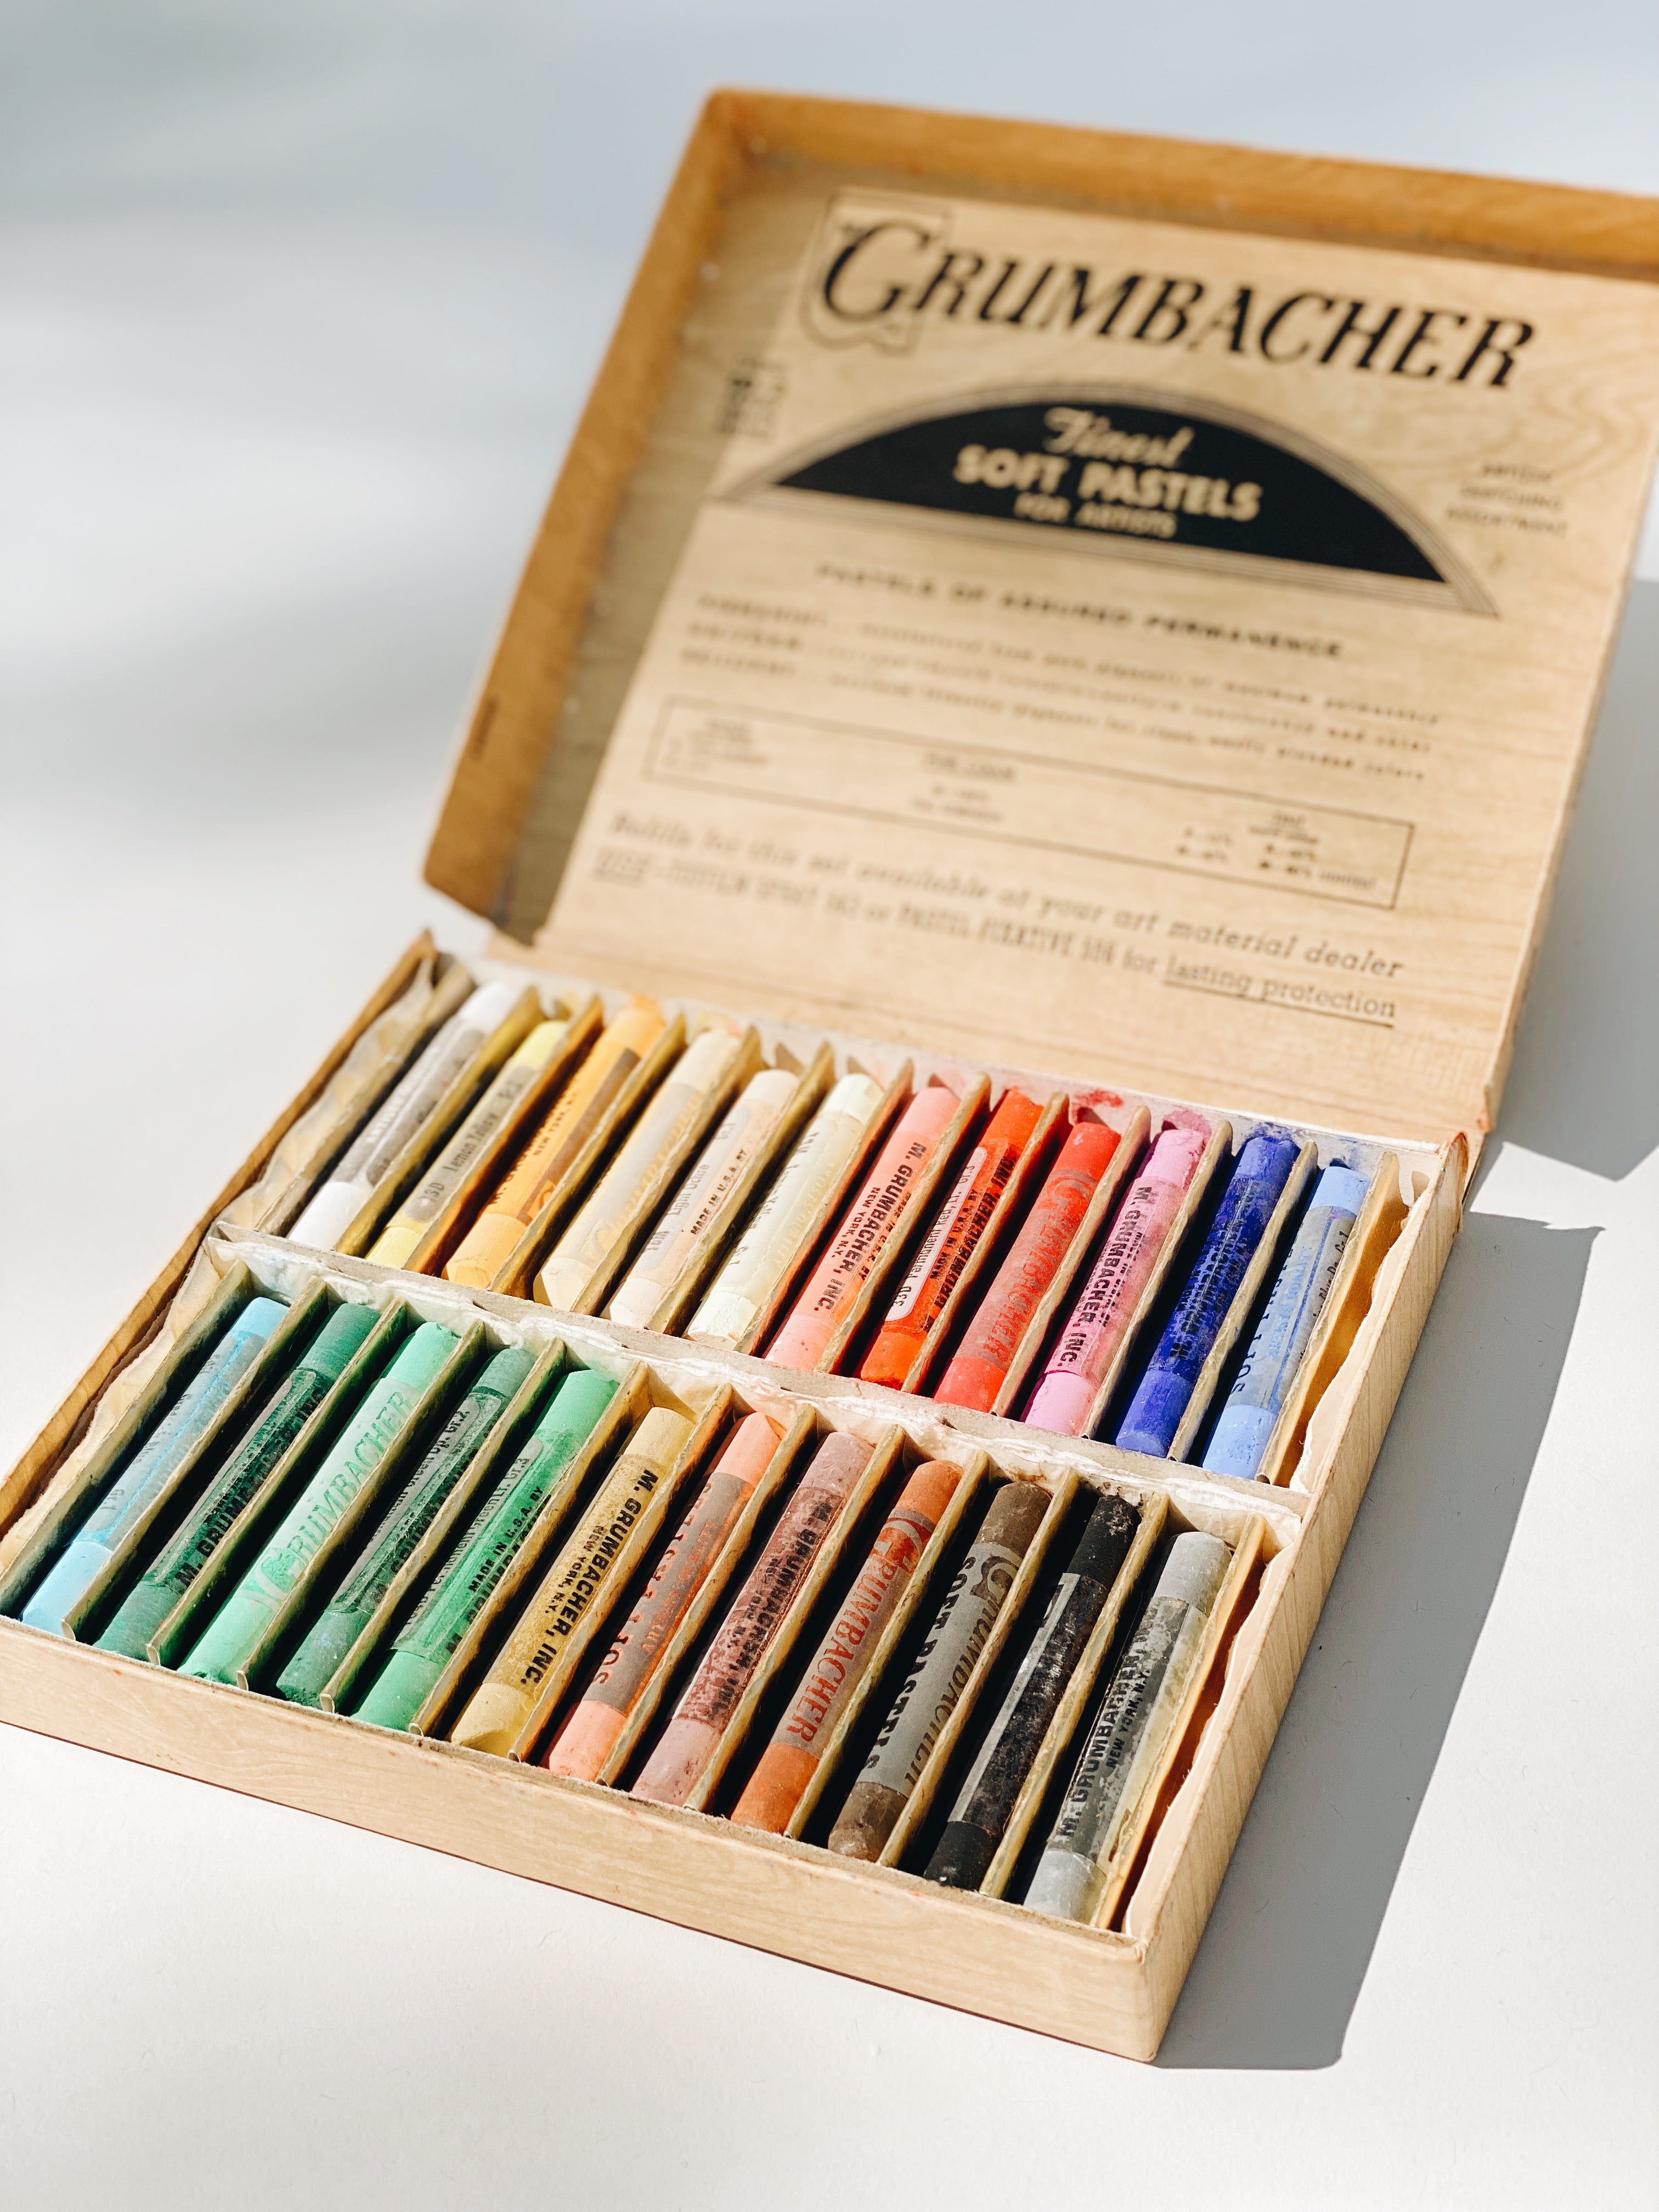 Vintage Grumbacher 24 Soft Pastel Set No.00/2 in Original Box -22 Colors  Present